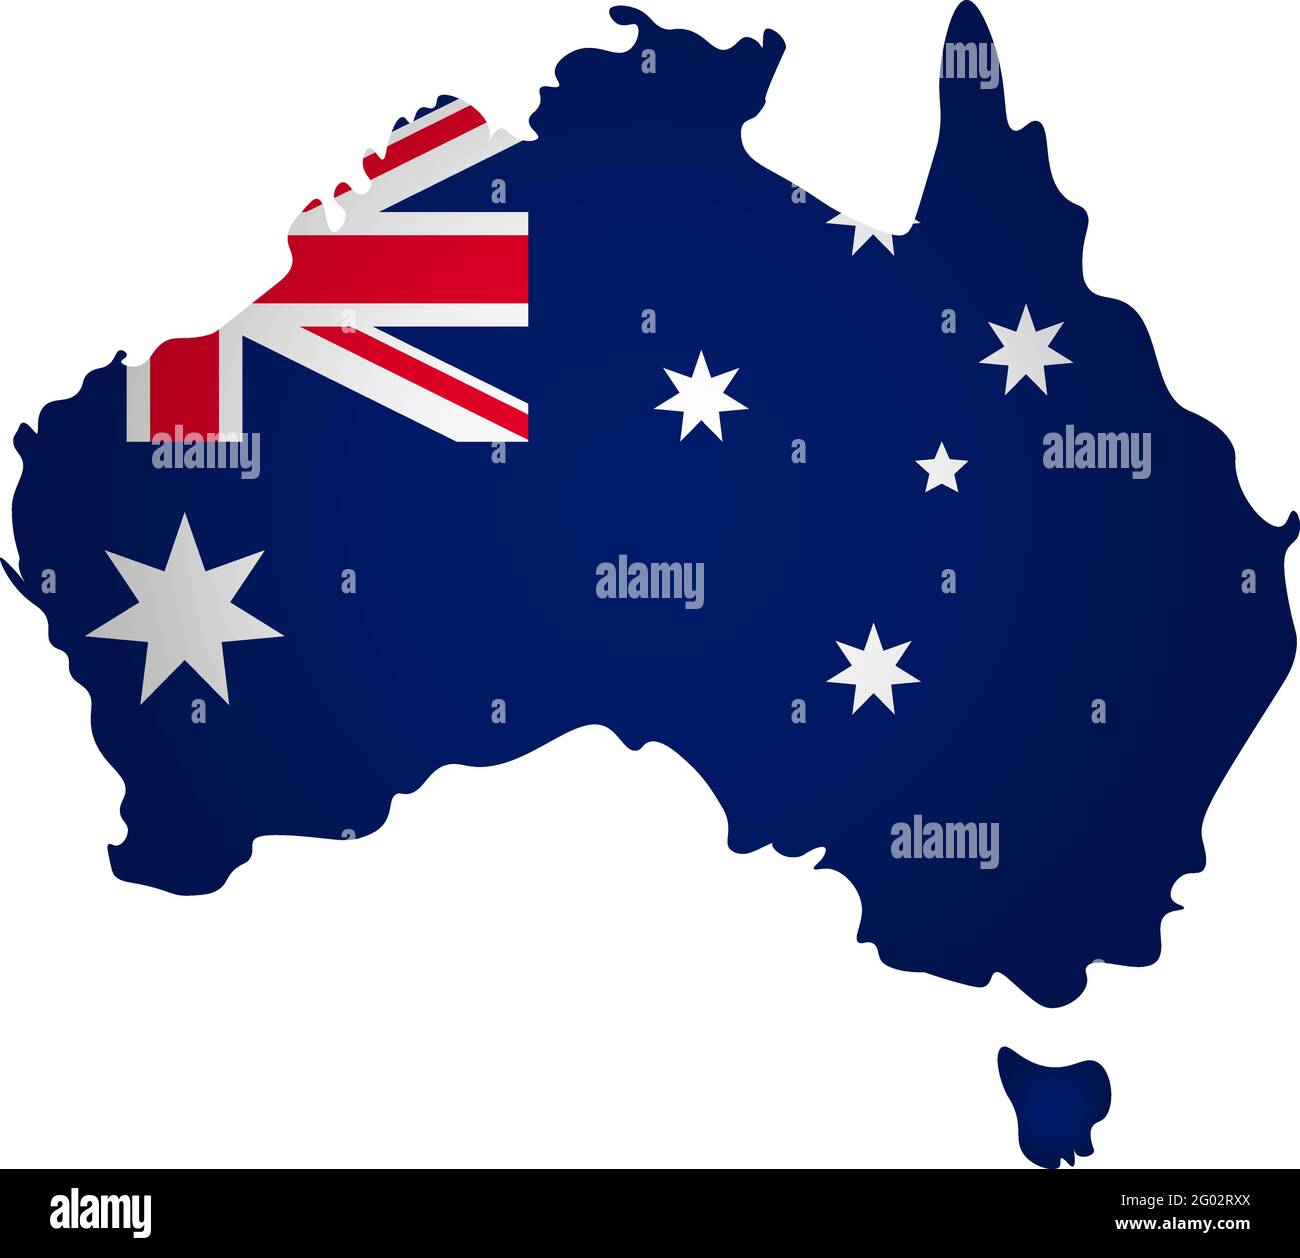 Abbildung mit Nationalflagge mit vereinfachter Form der Australien-Karte (jpg). Volumeschatten auf der Karte Stock Vektor